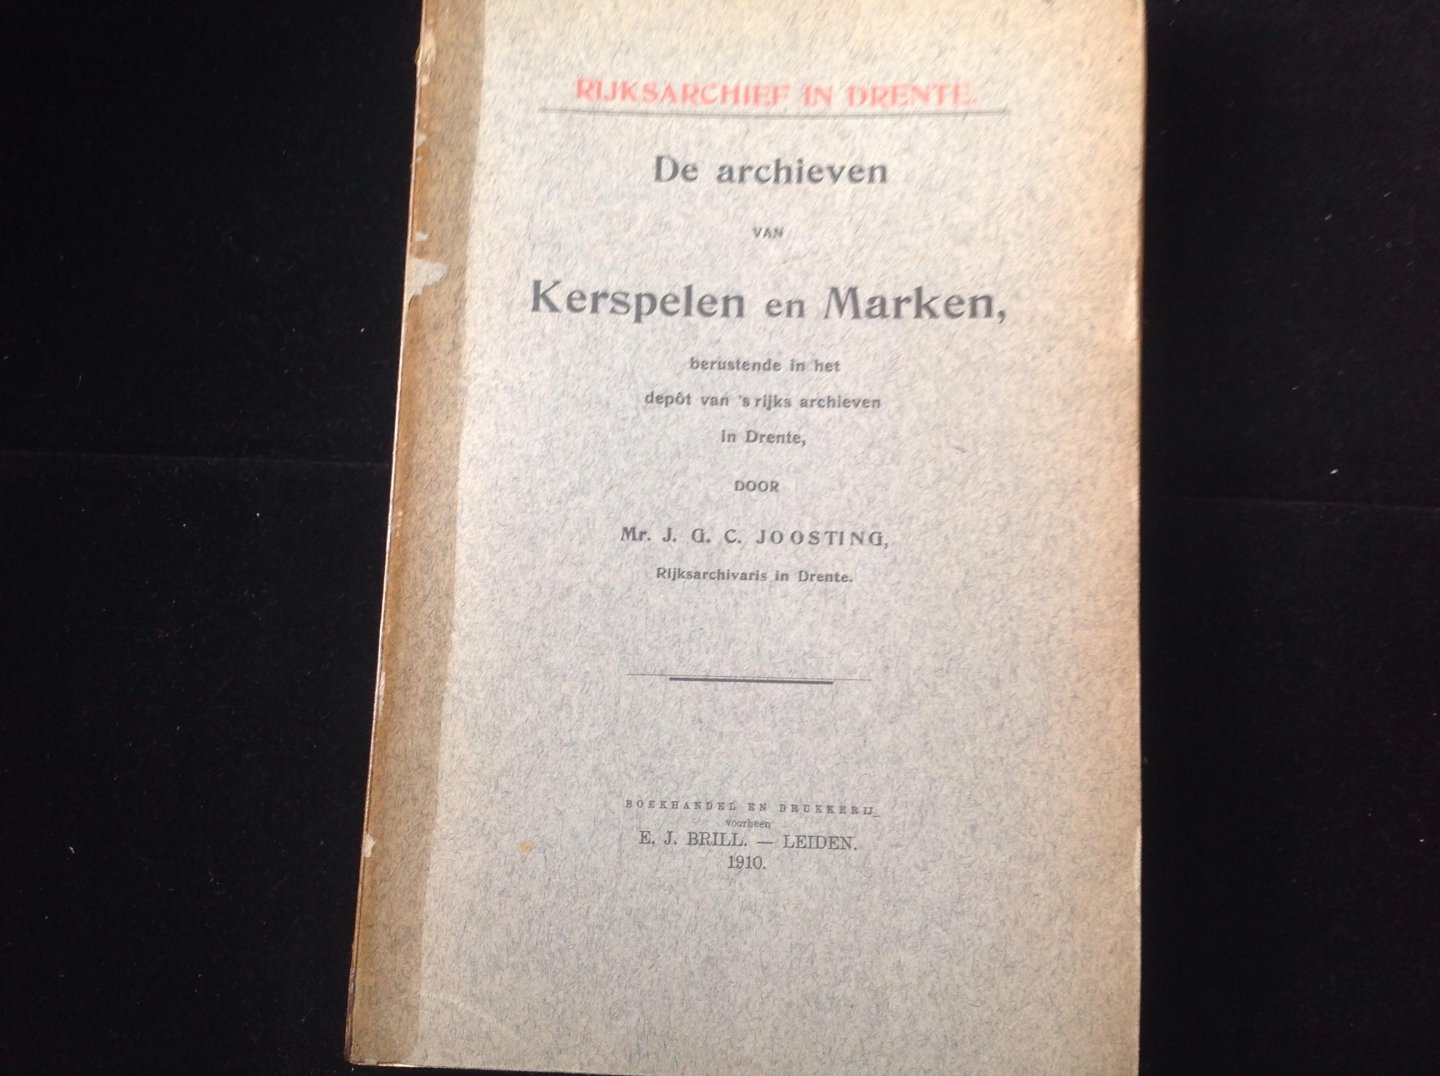 Joosting, J.G.C. - De archieven van Kerspelen en Marken berustende in het depot van 'rijks archieven in Drente